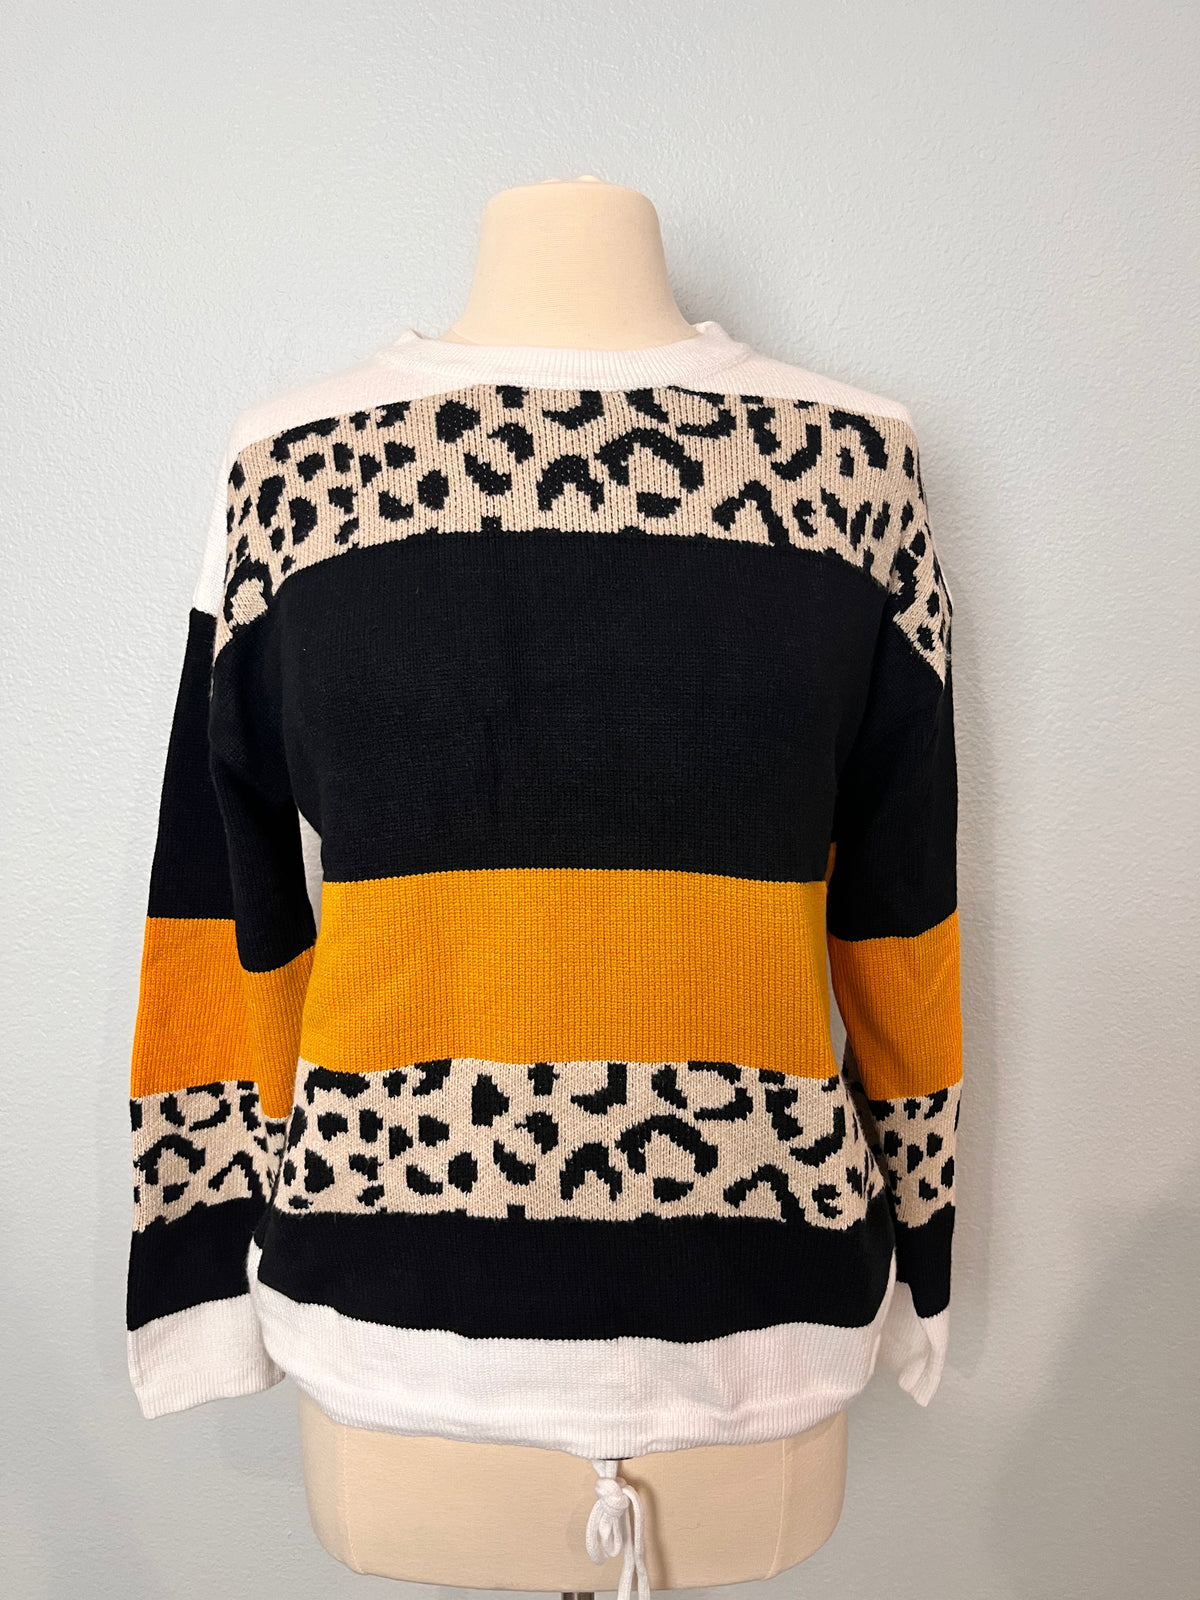 Crewneck Leopard Color Block Sweater